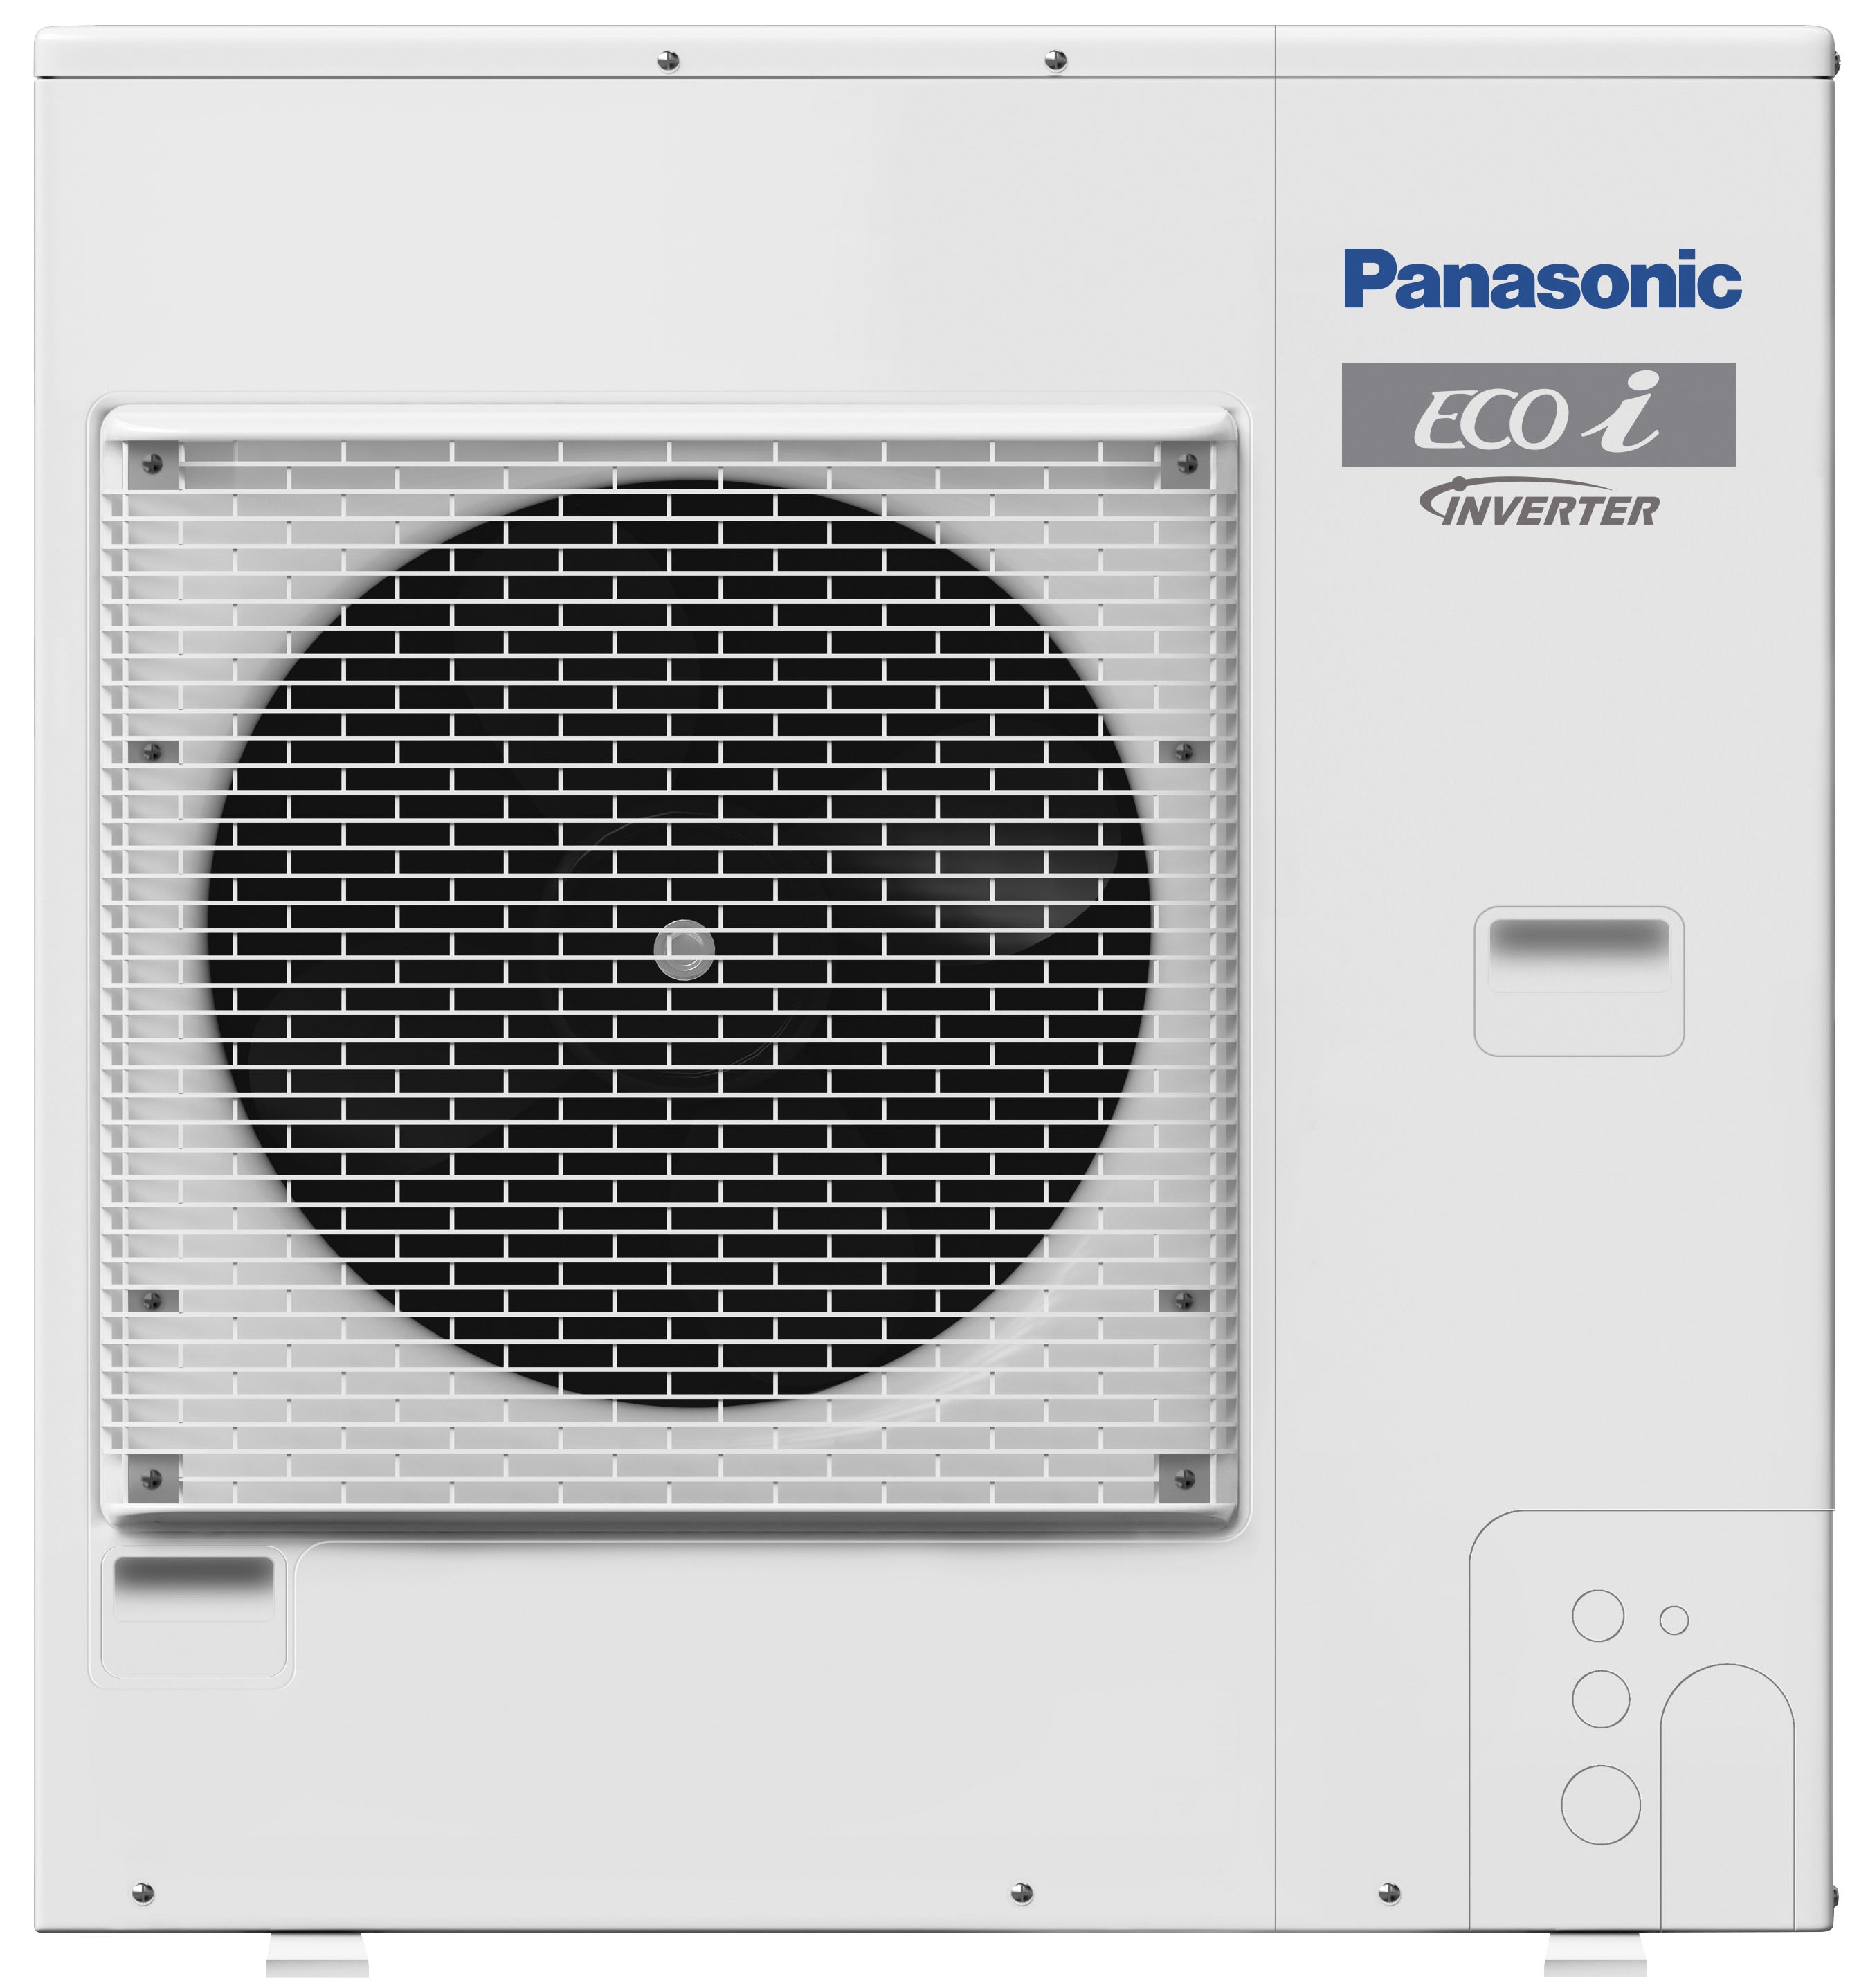 Panasonic Clim - Mini DRV 4 ch Monopahasé LE2 Mono ventilateur